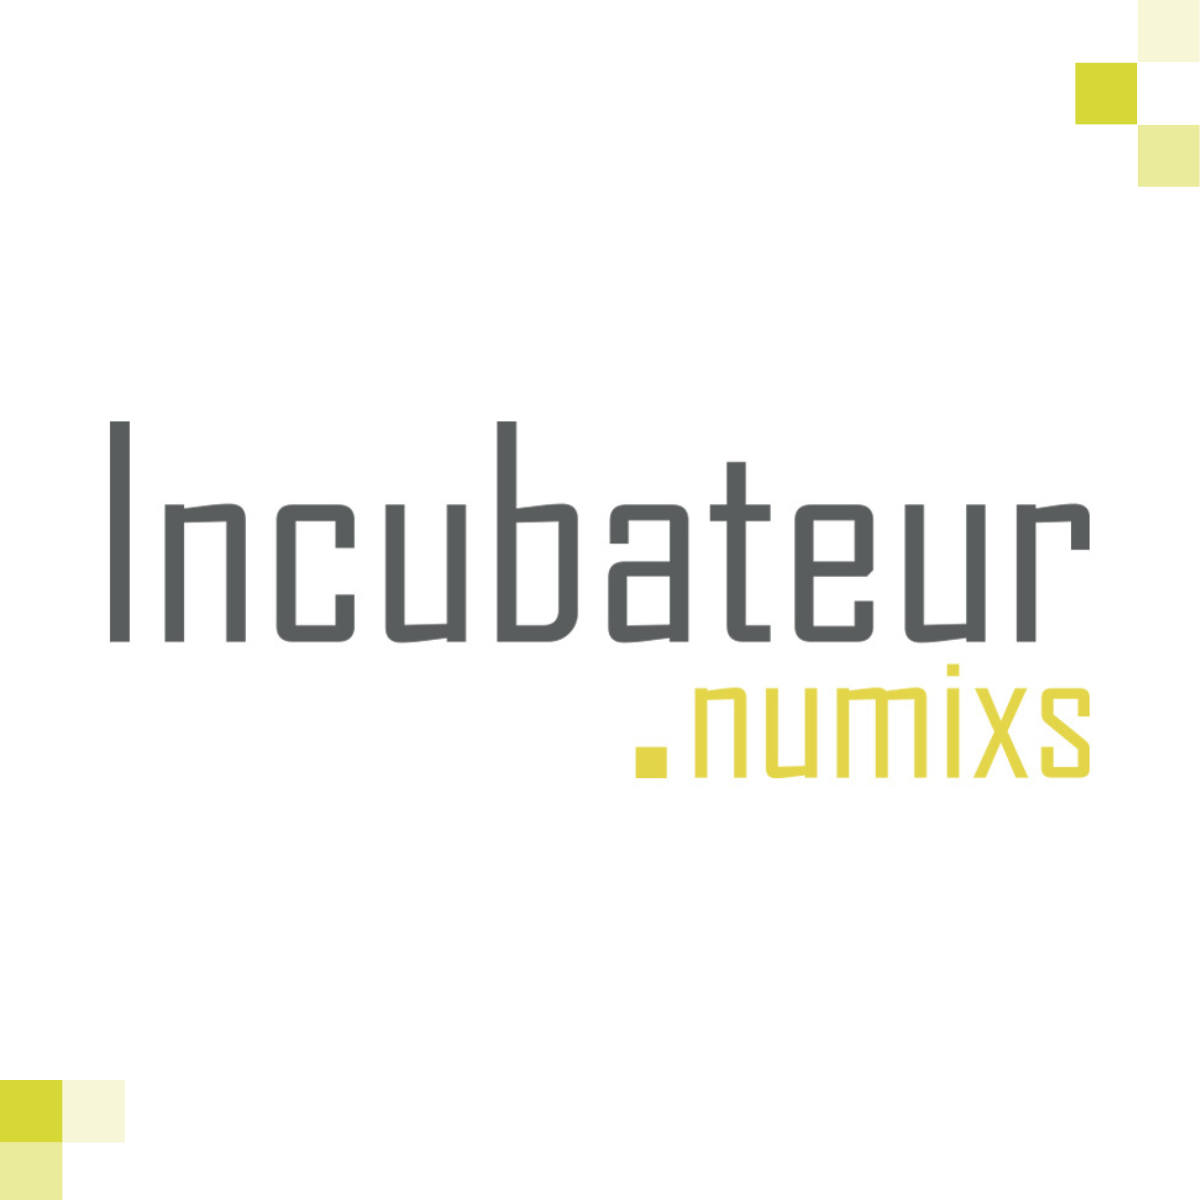 Logo de l'incubateur de la Station Numixs